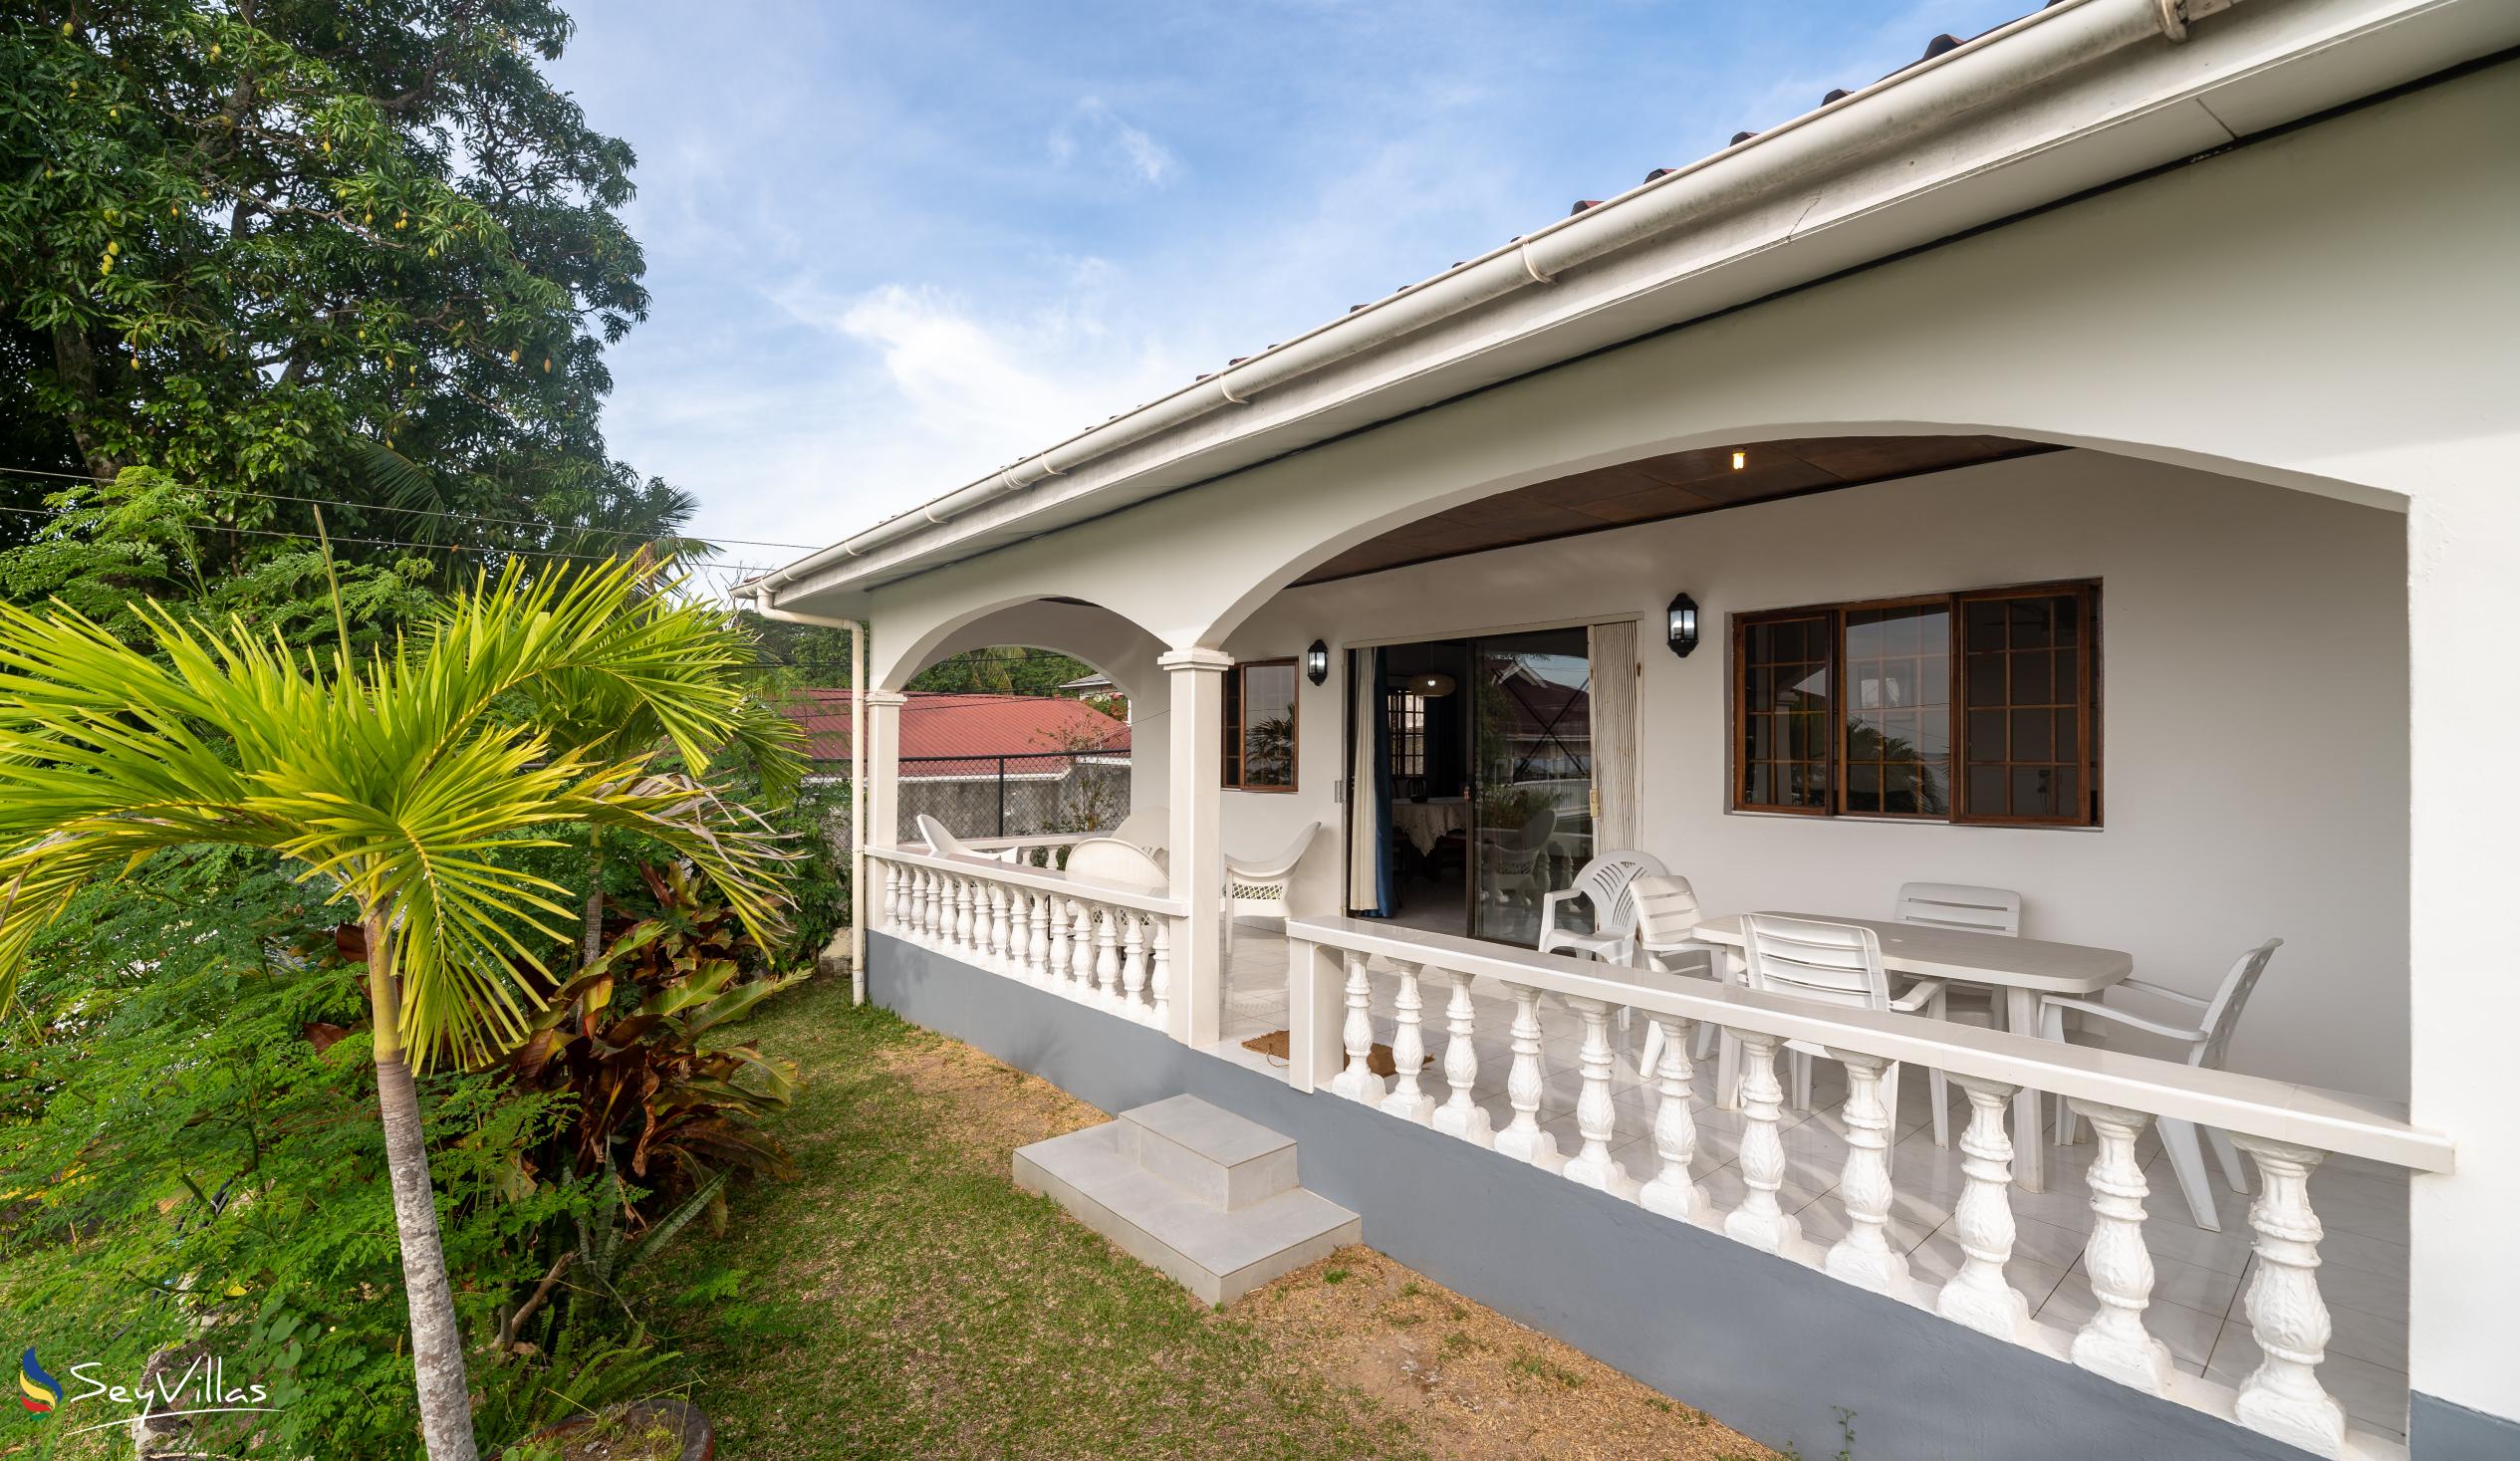 Foto 9: Villa Rousseau - Villa 3 chambres - Mahé (Seychelles)